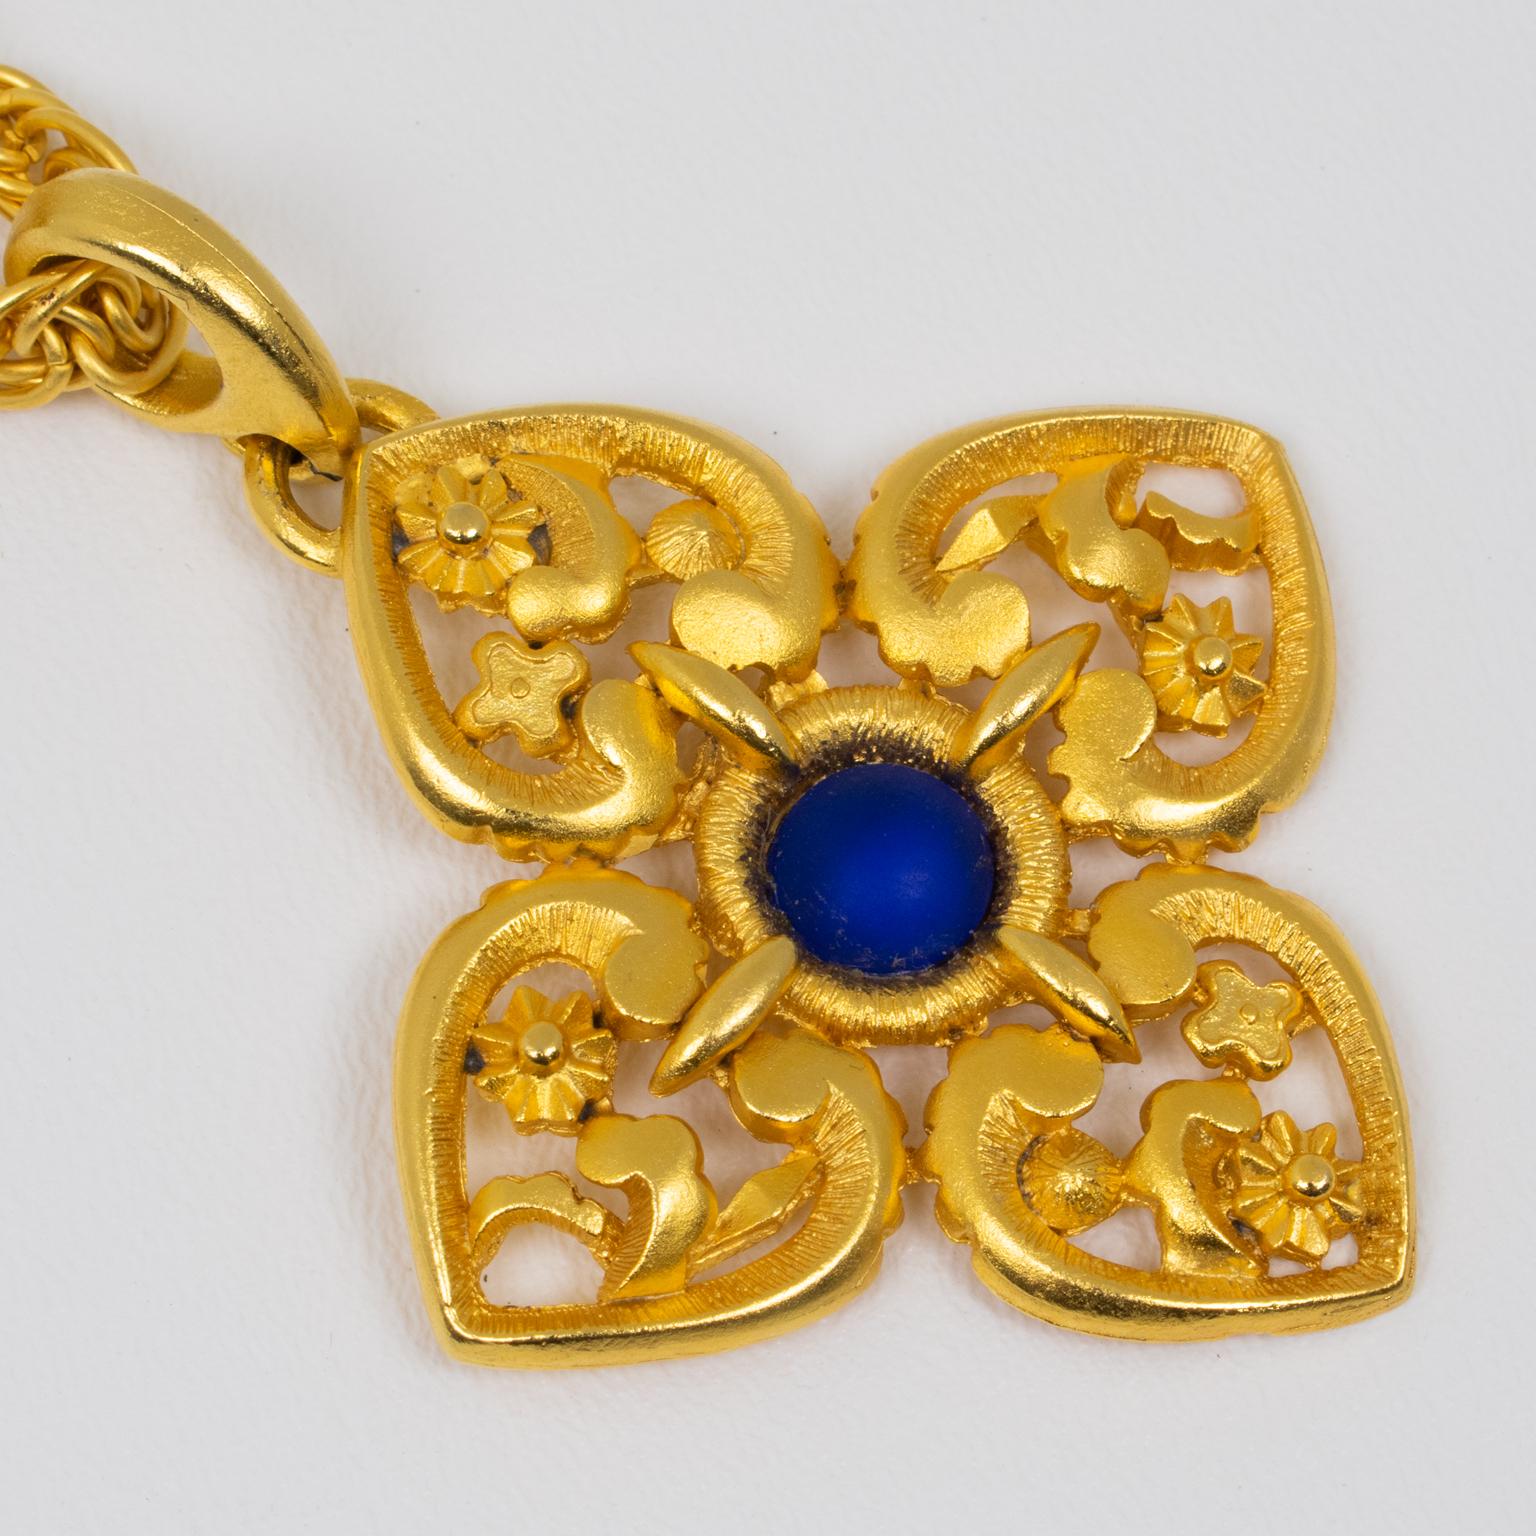 Lanvin Paris Gilt Metal Pendant Necklace with Blue Poured Glass Cabochon For Sale 1